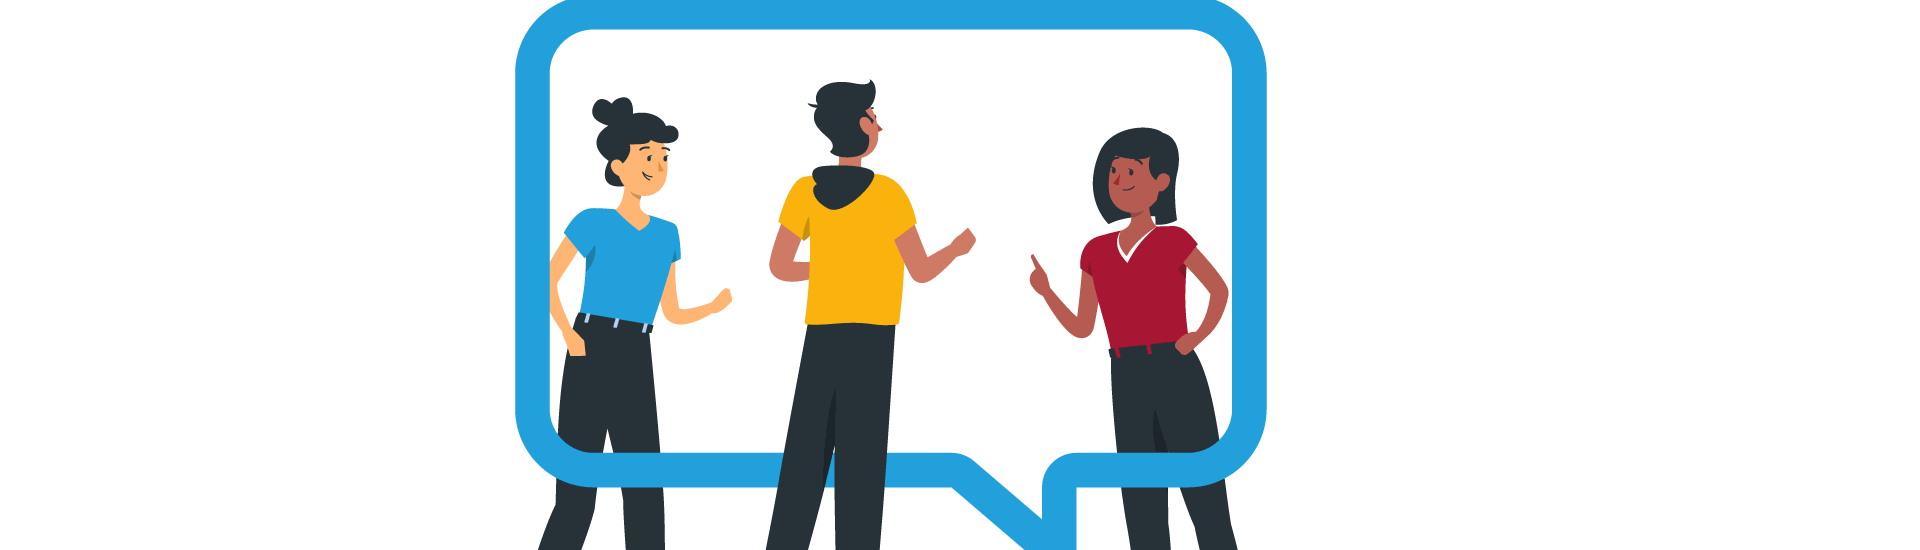 Illustration zum Leitbild 2035. Drei Personen stehen in einer Sprechblase und diskutieren. (c) Freepik Storyset